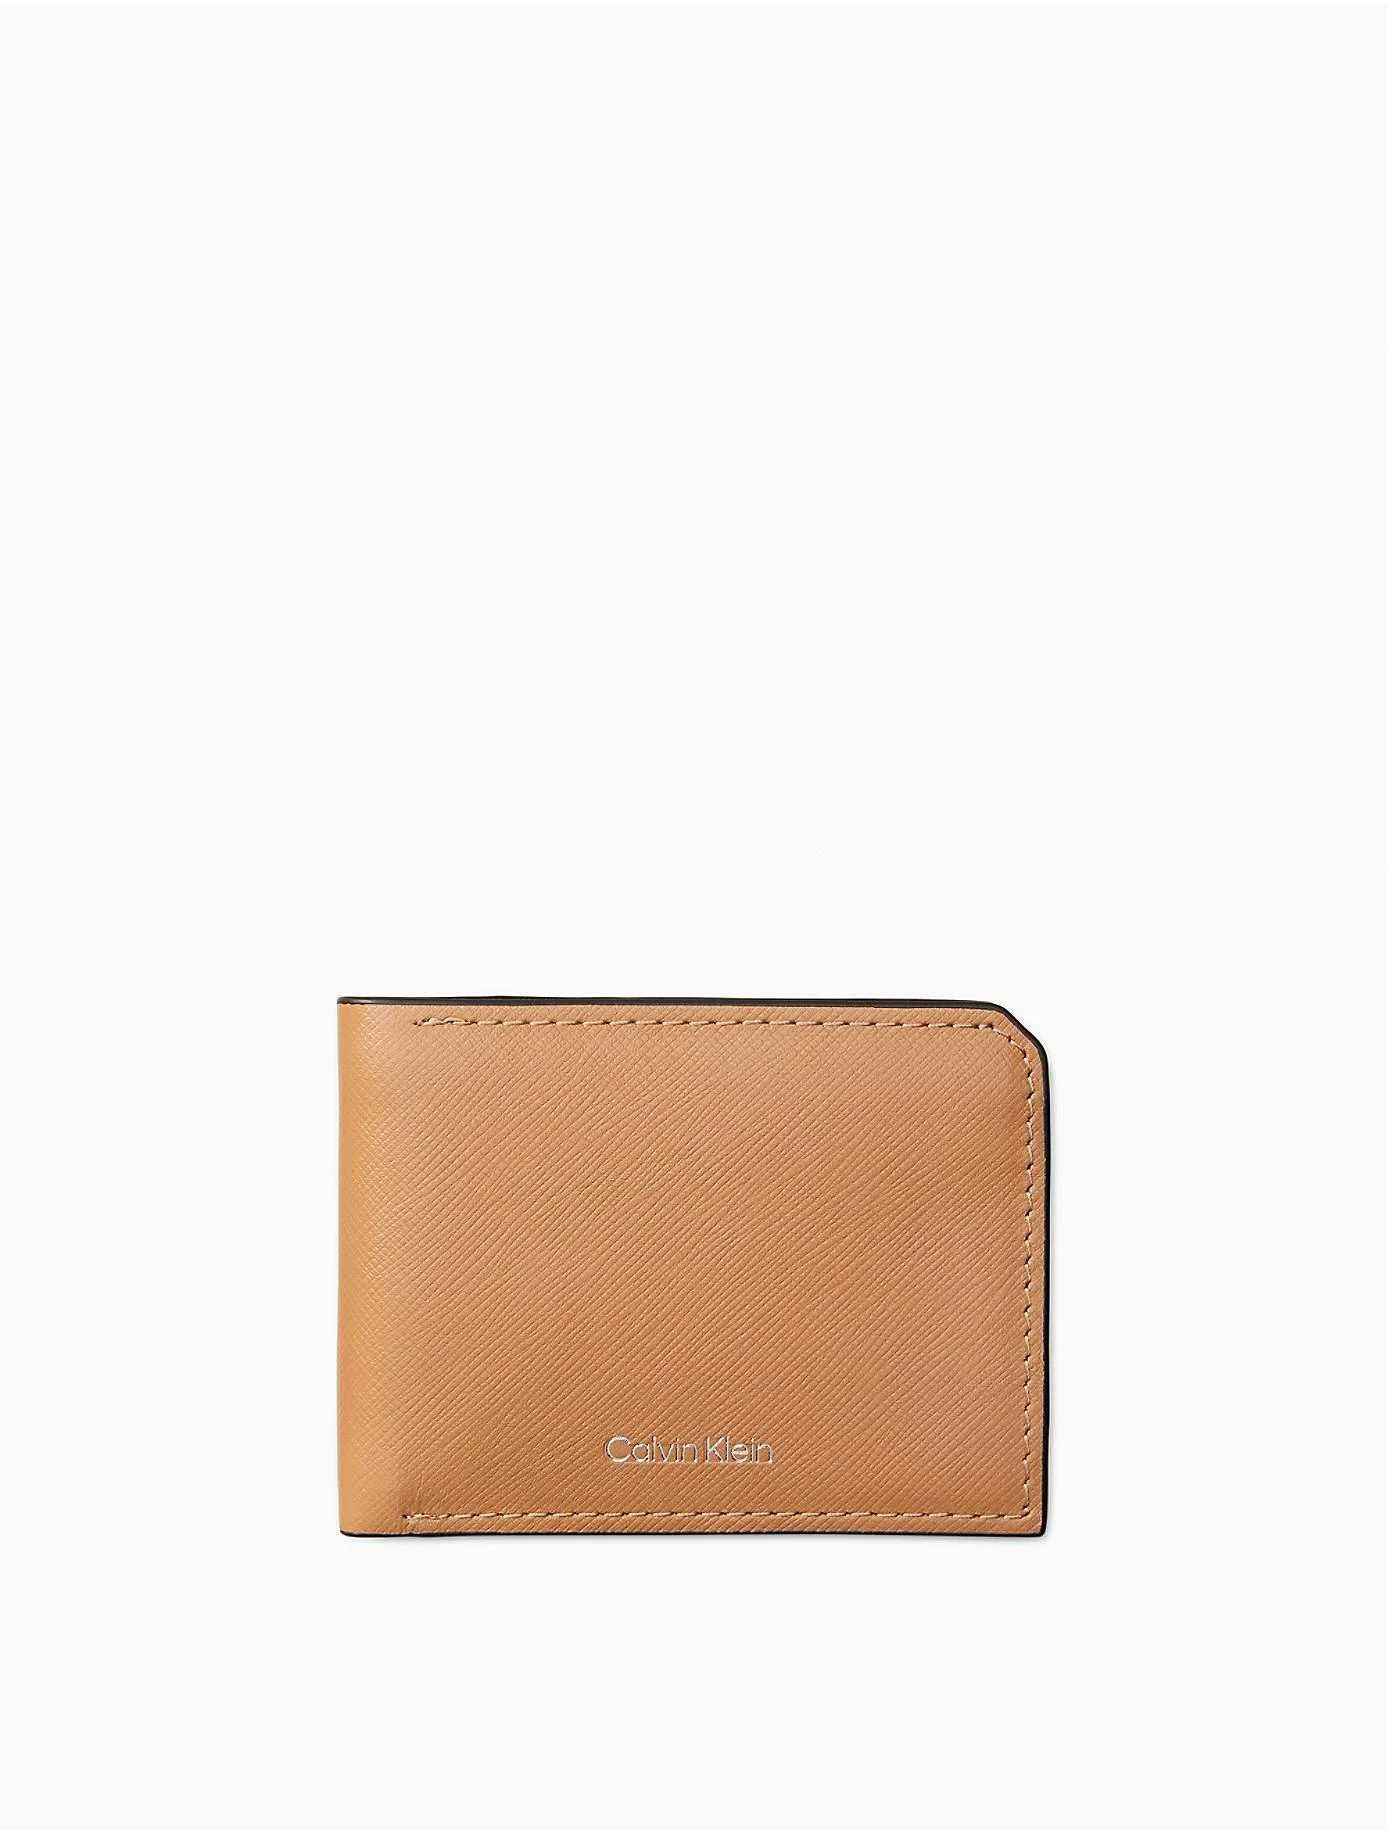 Новый кошелек кожаный calvin klein (ck leather cuoio wallet) с америки